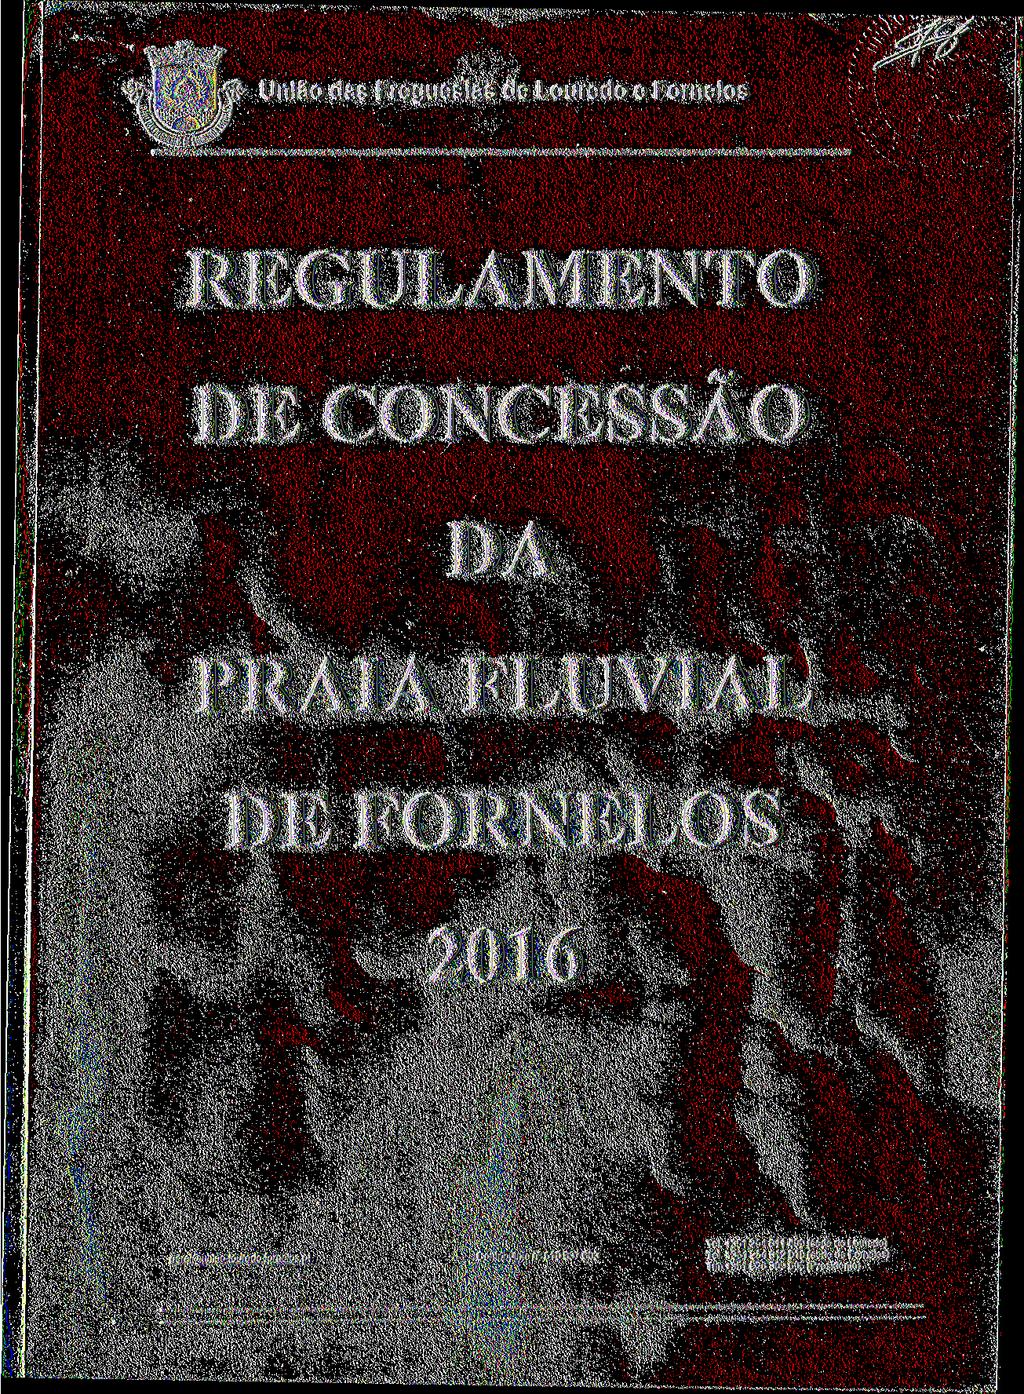 REGULAMENTO DE CONCESSÃO DA PRAIA FLUVIAL DE FORNELOS 2016